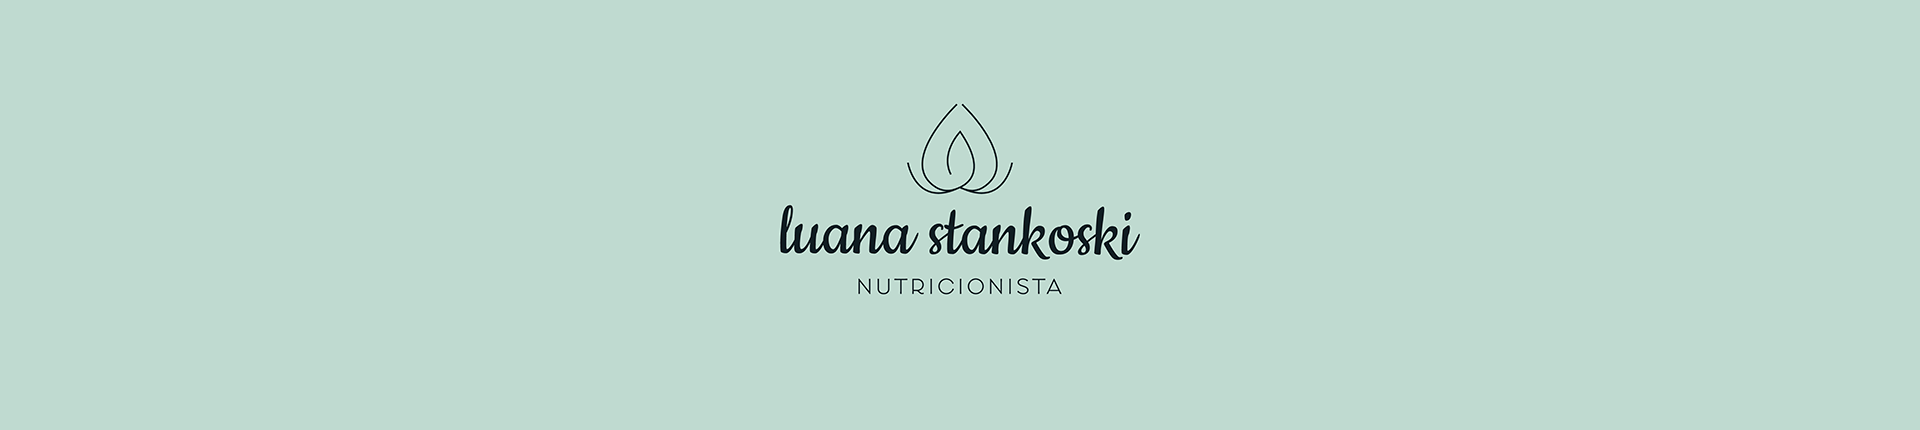 Luana Stankoski – Nutricionista